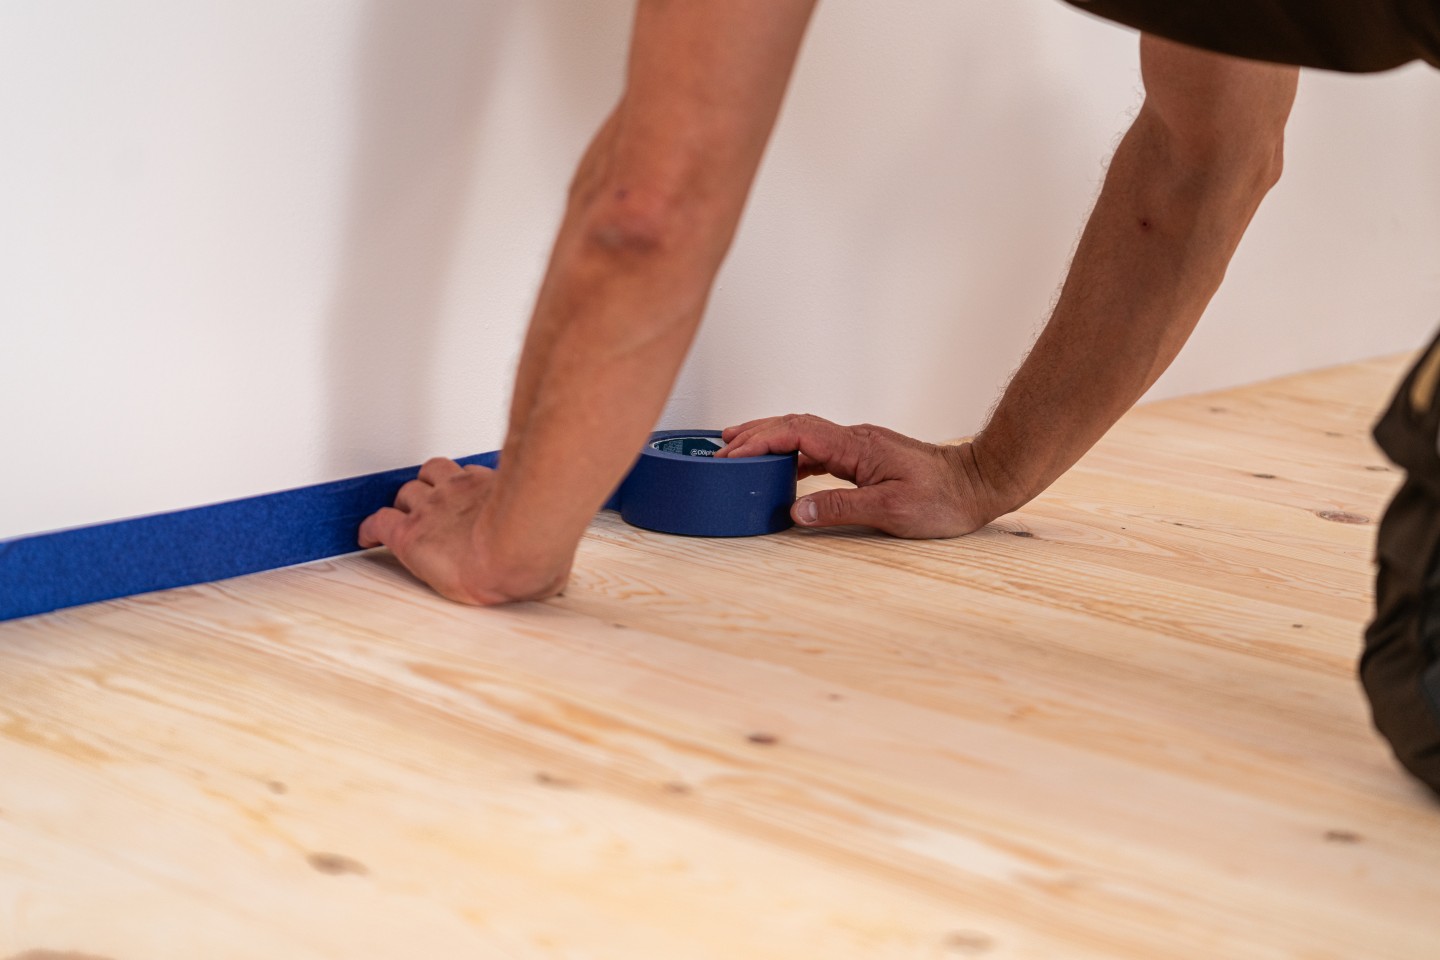 Zabezpieczenie ścian taśmą ochronną przed lakierowaniem podłogi.